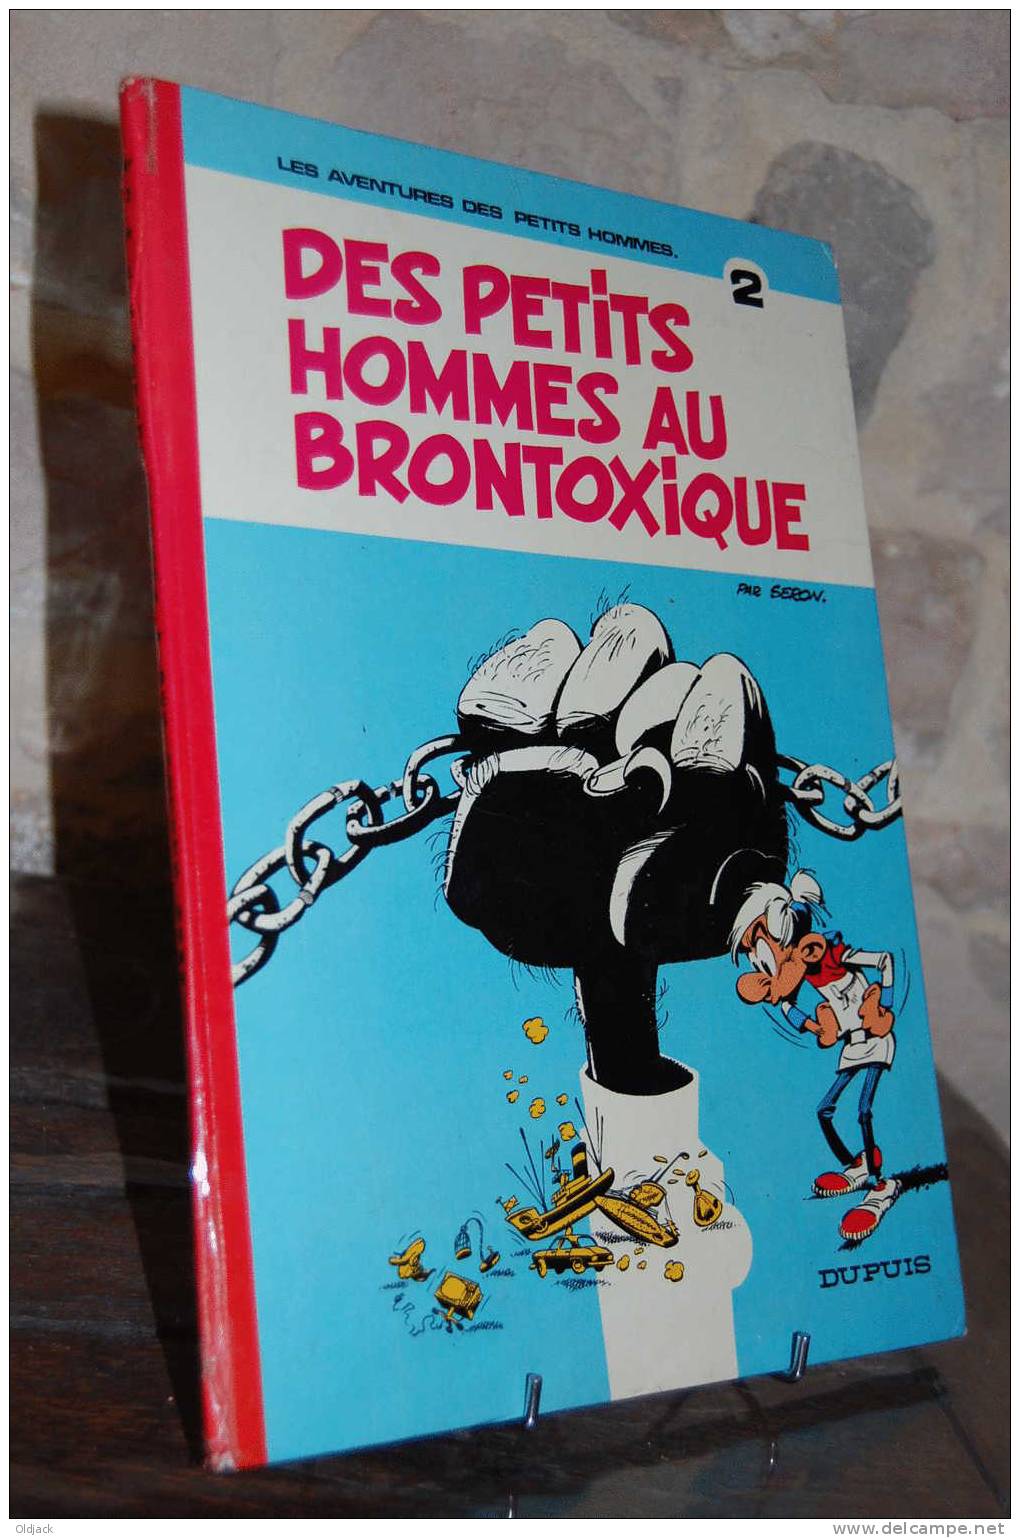 DES PETITS HOMMES N°2 AU BRONTOXIQUE  1974 (r32) - Petits Hommes, Les